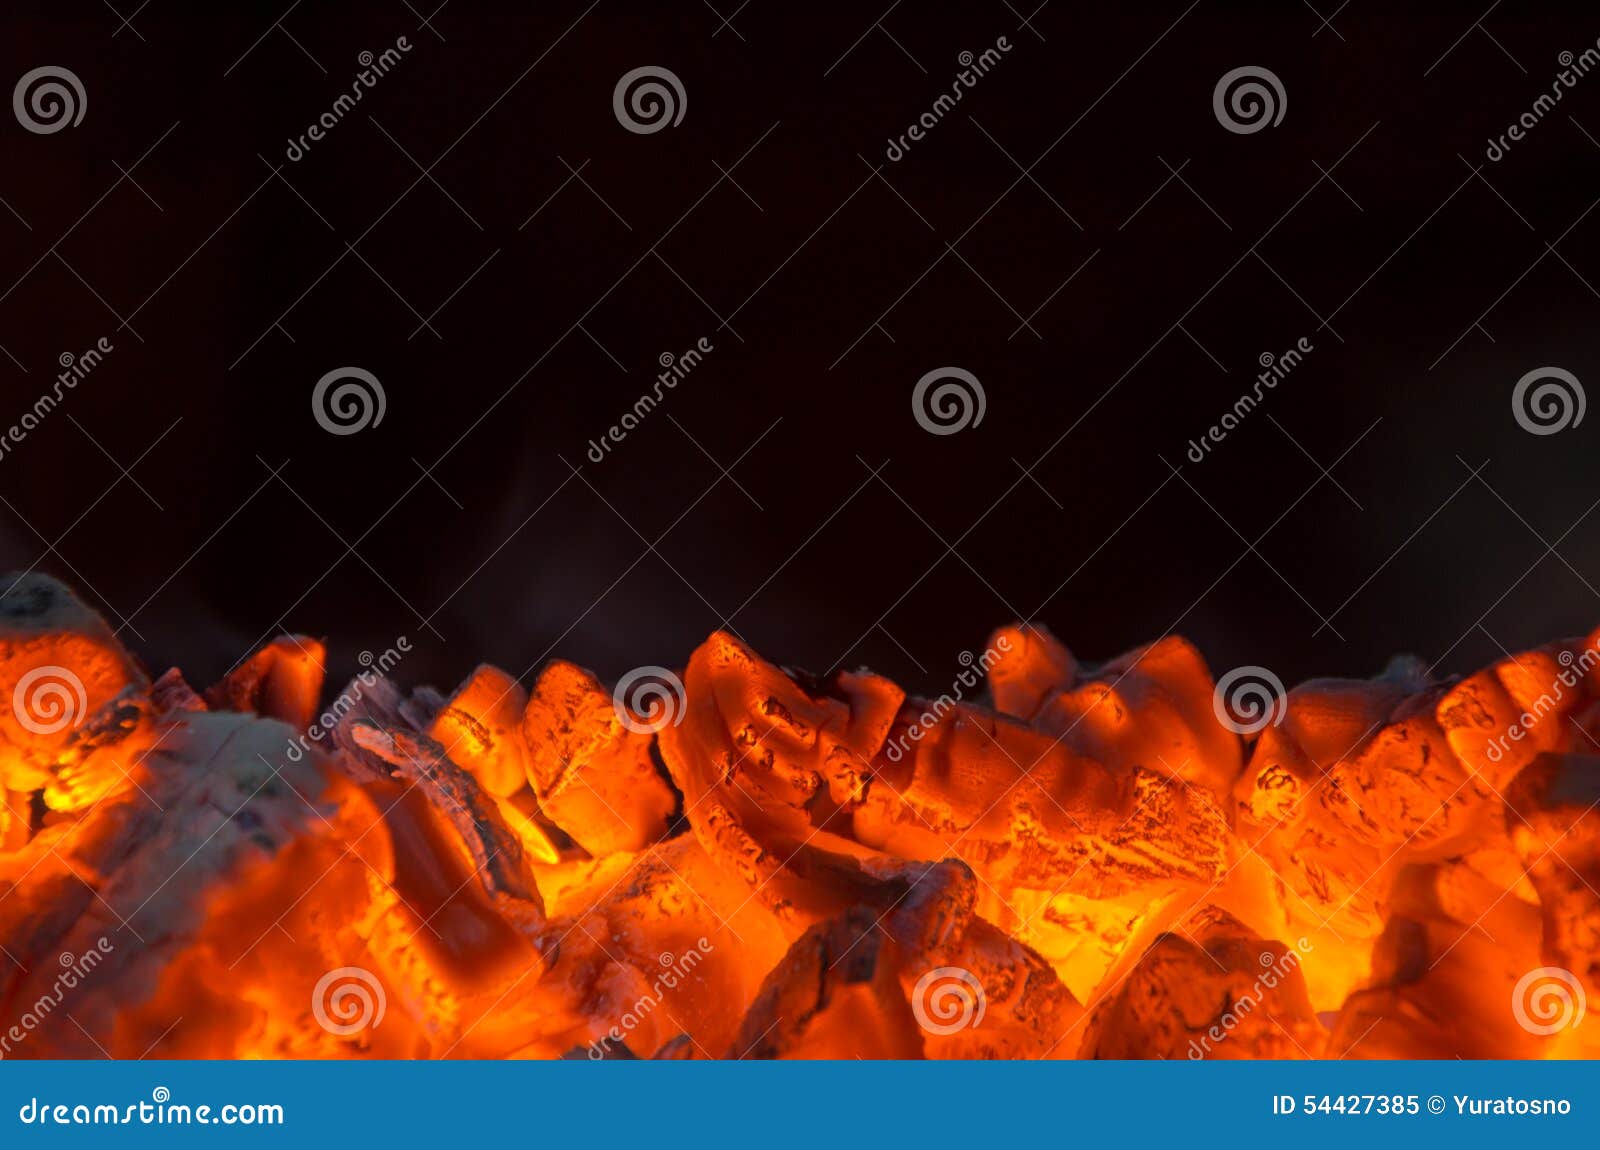 hot coals